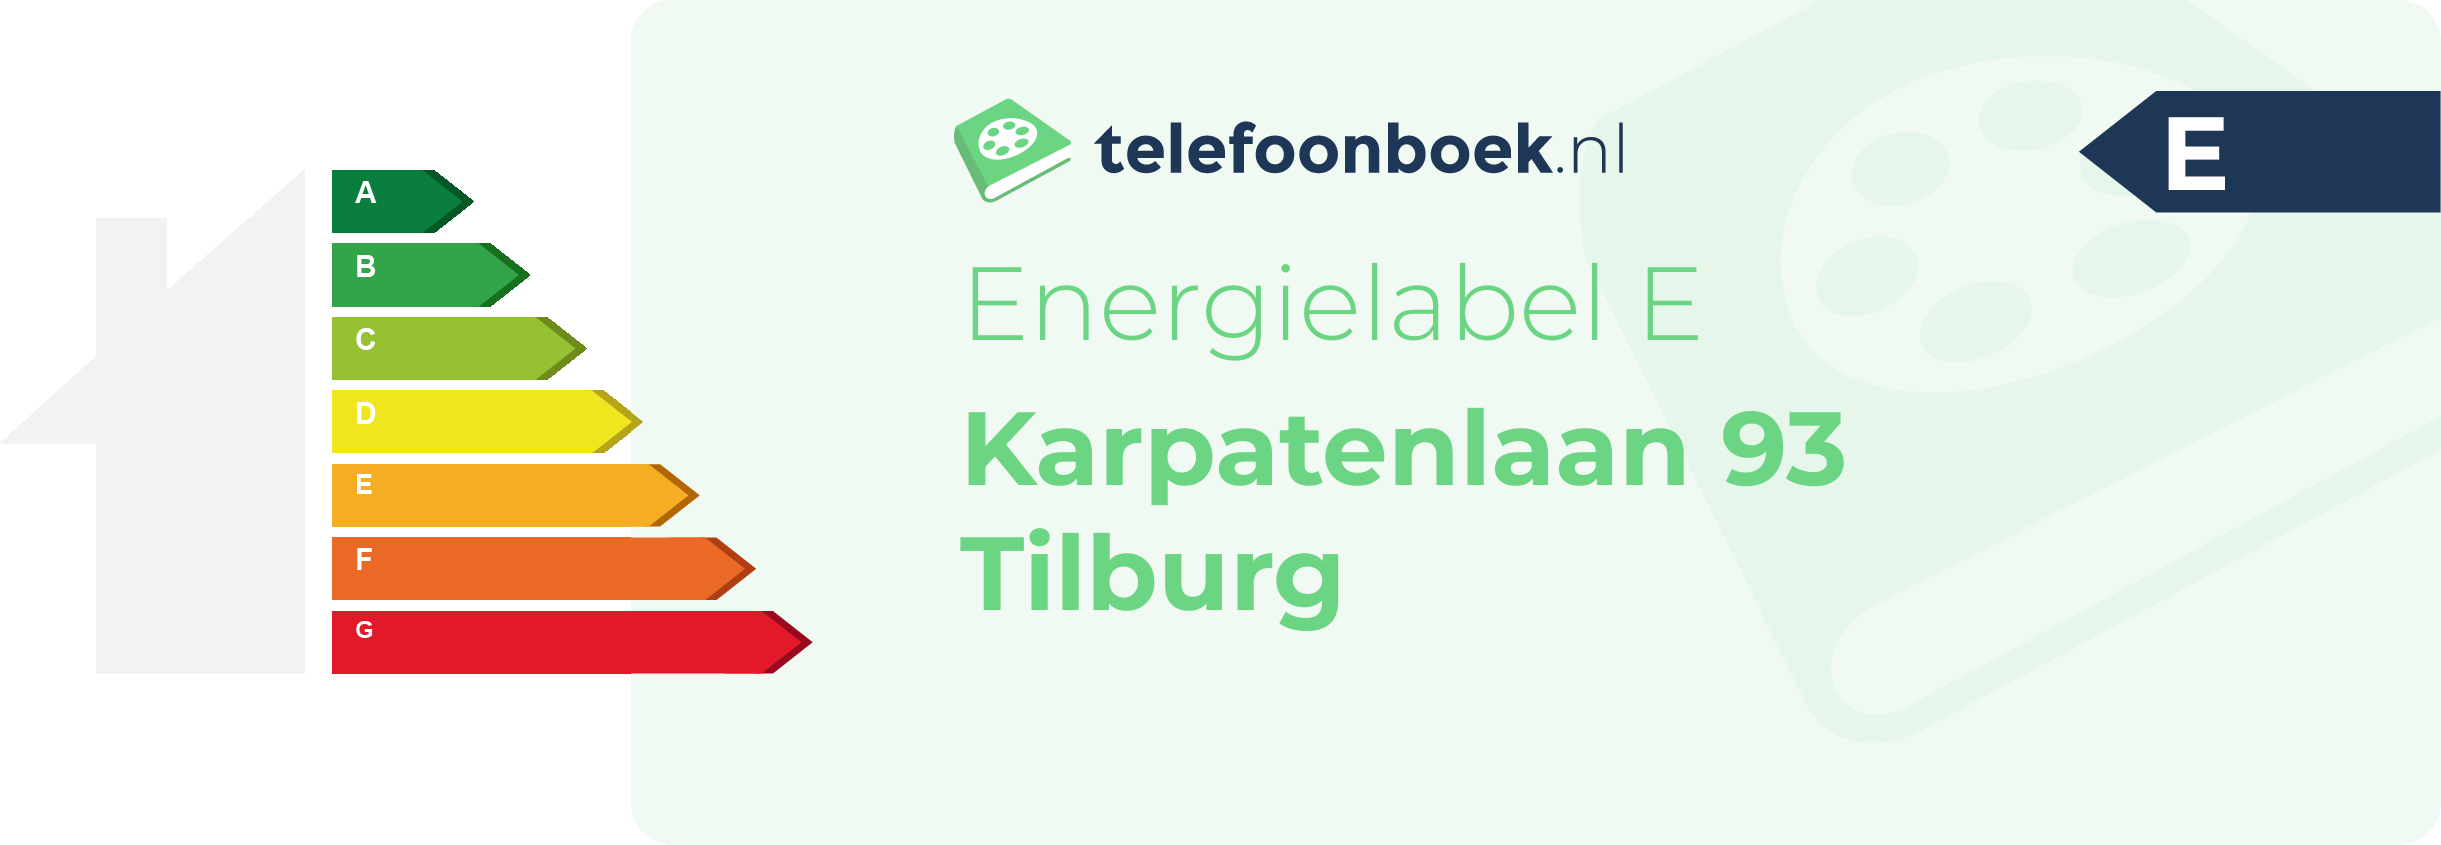 Energielabel Karpatenlaan 93 Tilburg